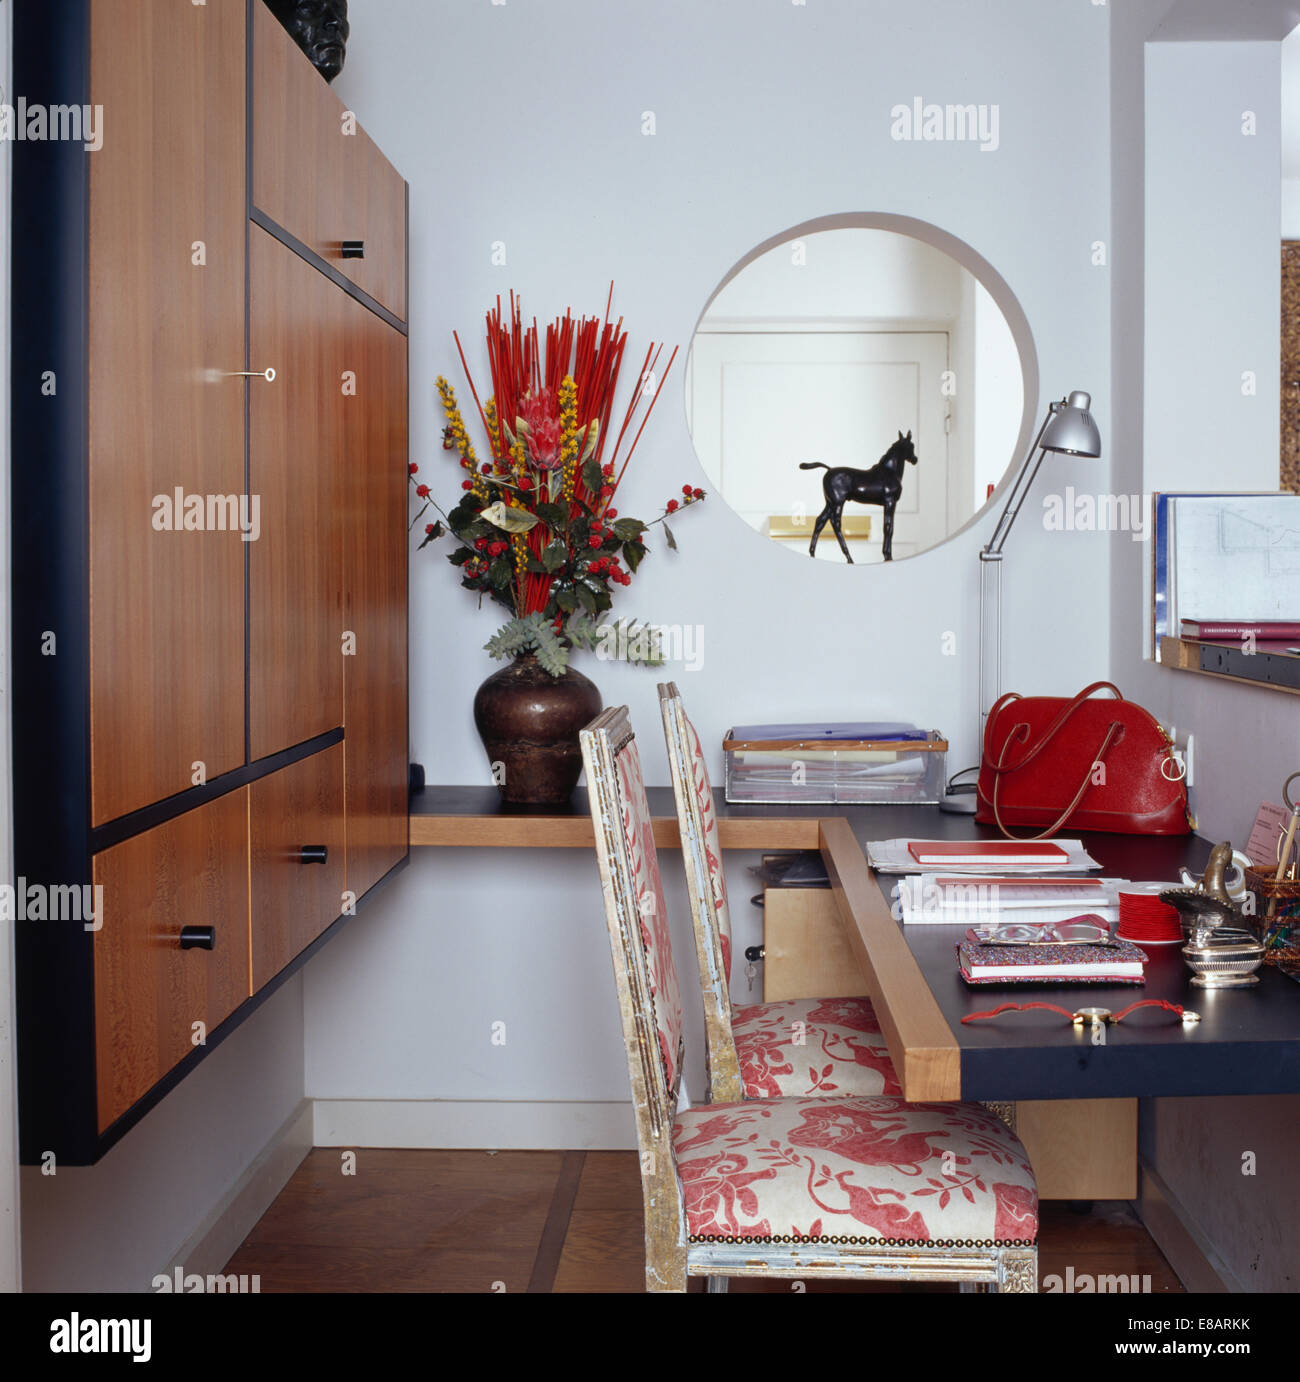 Petite ouverture circulaire au mur de petite étude moderne équipée avec placard de rangement et meubles mobilier chaises peintes Banque D'Images